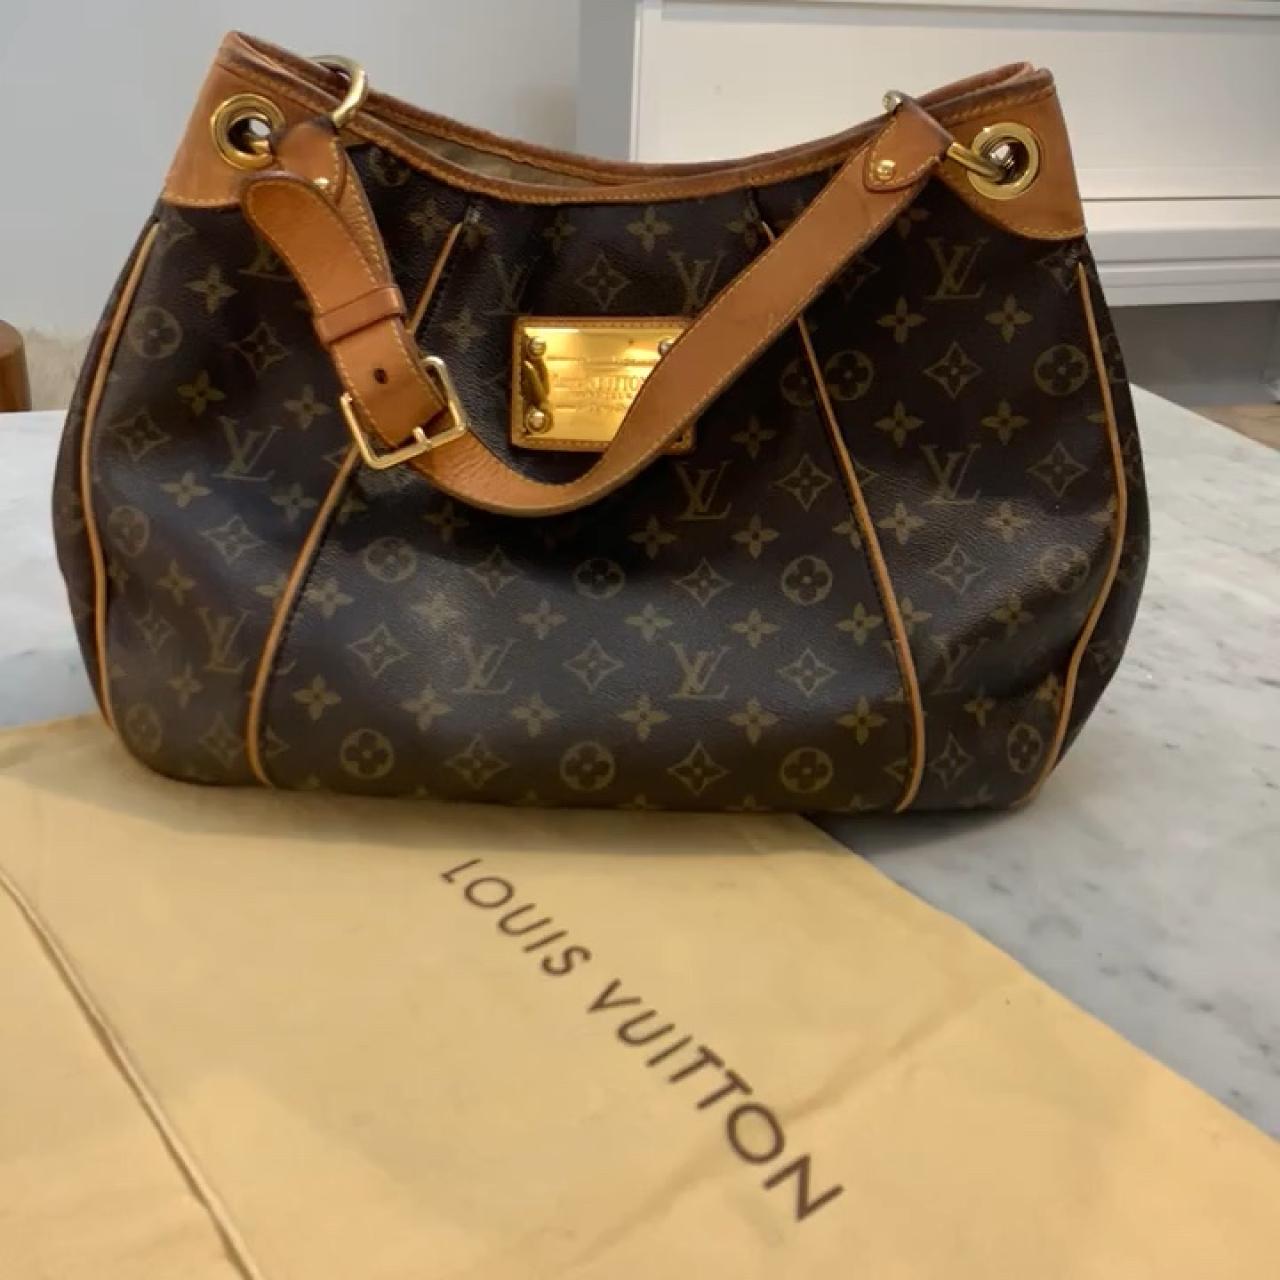 Genuine Louis Vuitton y2k handbag 😍😍 reasonable - Depop